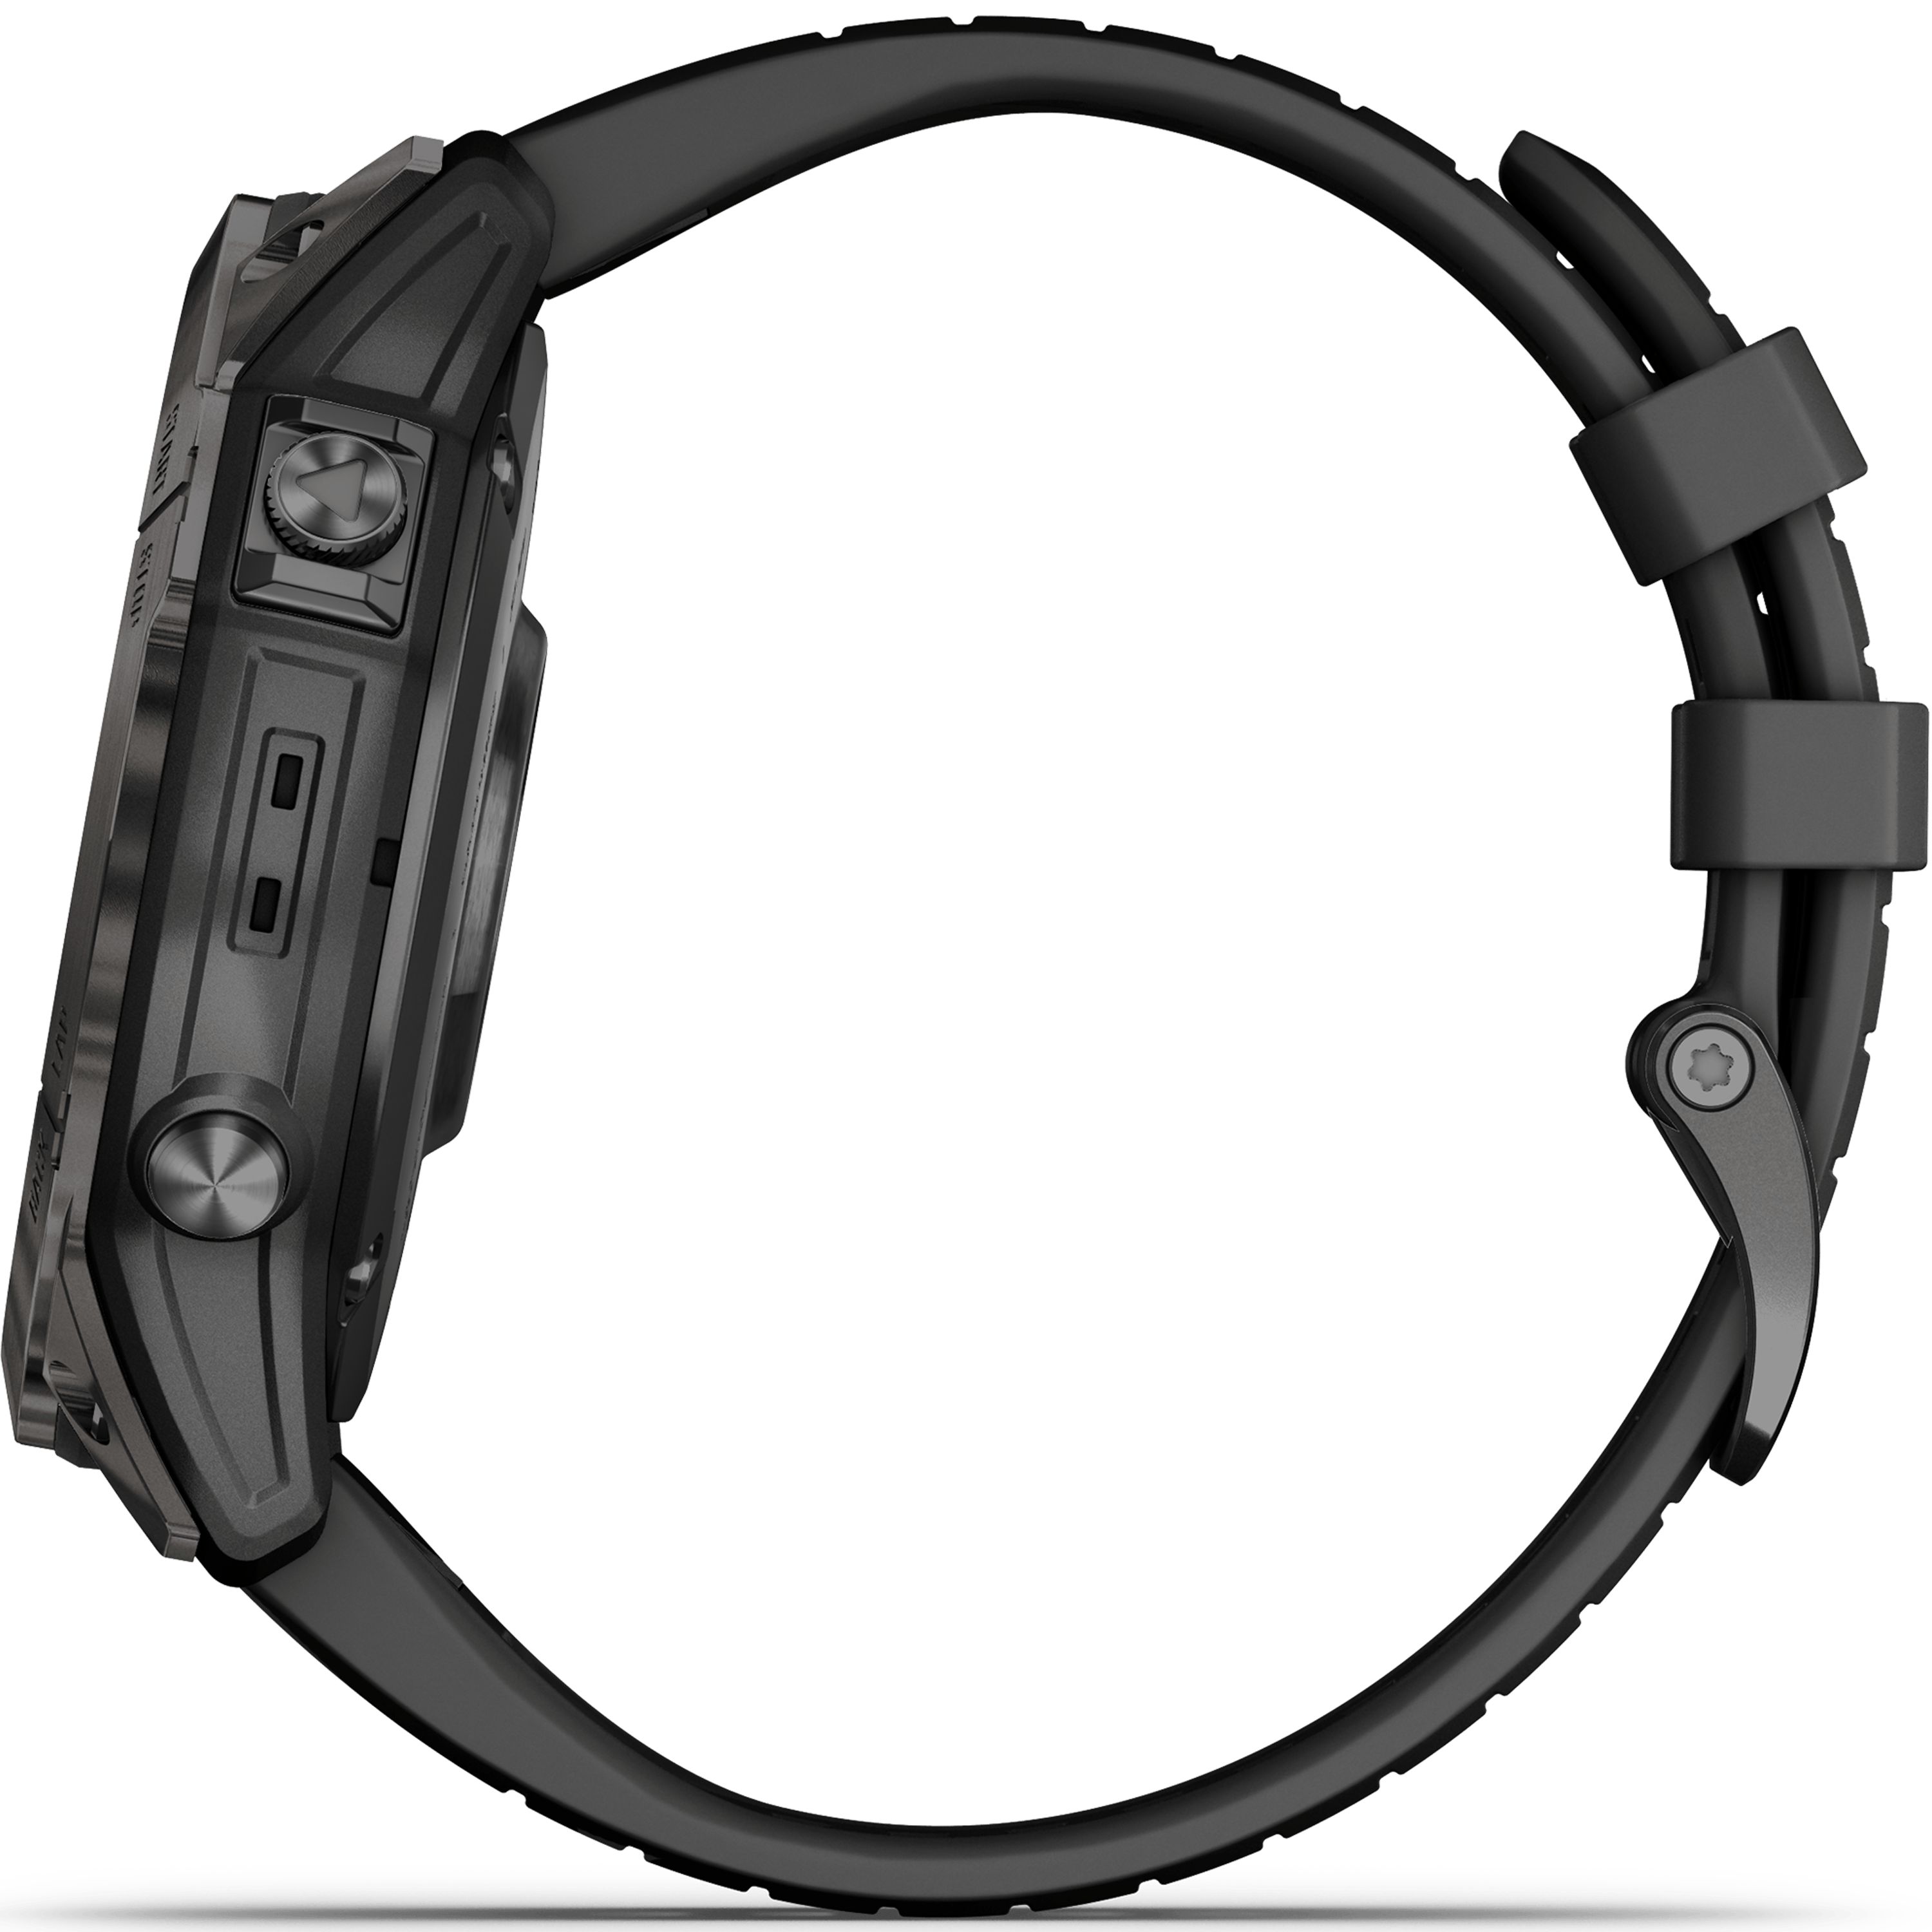 שעון ספורט חכם Garmin Fenix 7X Pro Sapphire Solar Titanium 51mm - צבע שחור פחם שנתיים אחריות ע